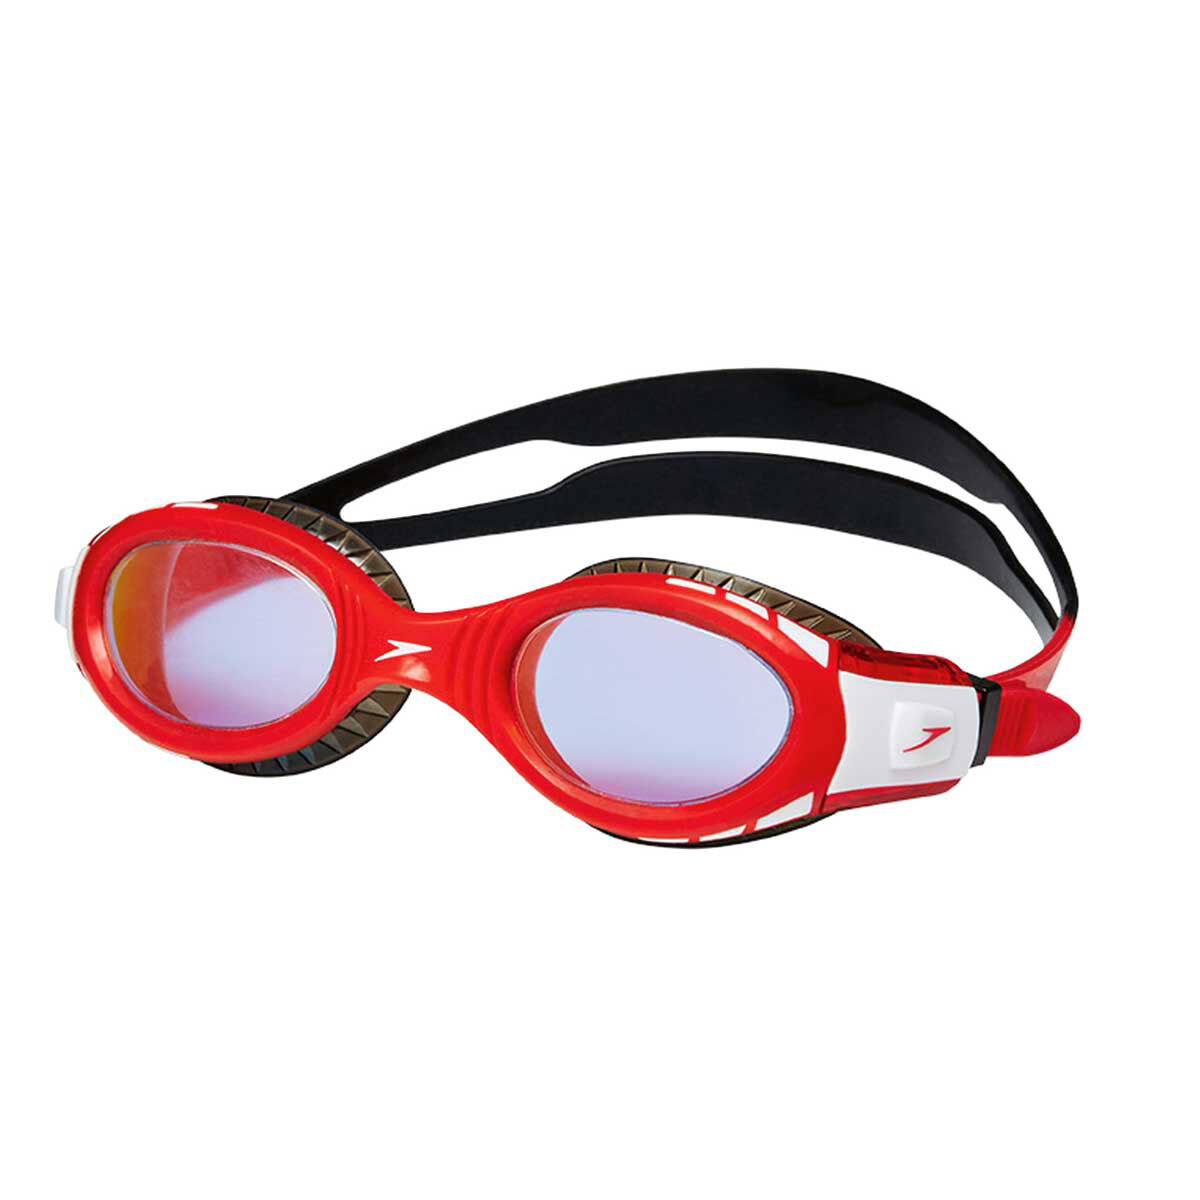 red speedo goggles